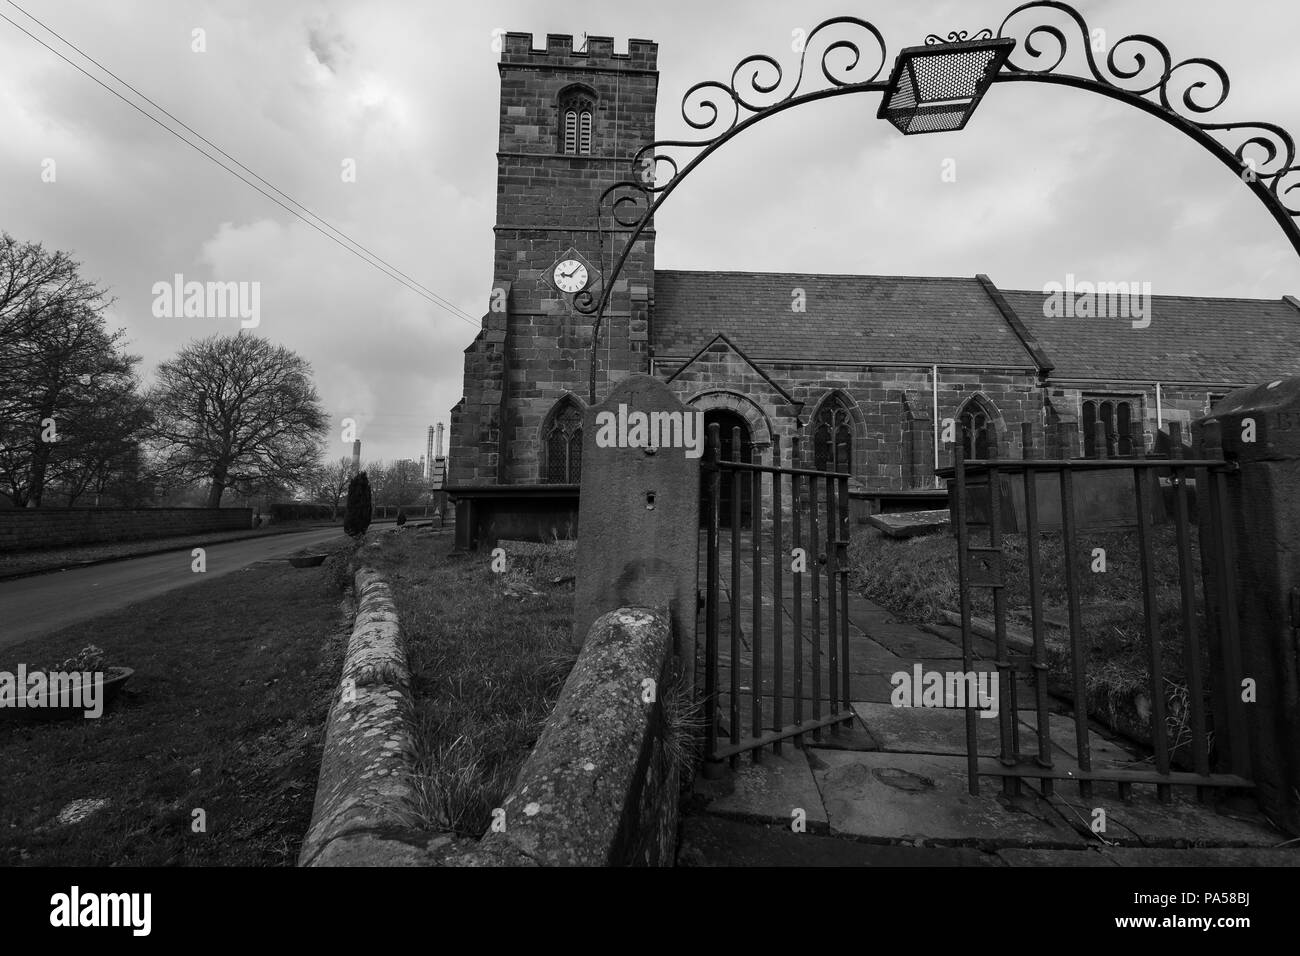 Immagine in bianco e nero di una vecchia chiesa in disuso con ingresso al cantiere della chiesa / cantiere grave Foto Stock